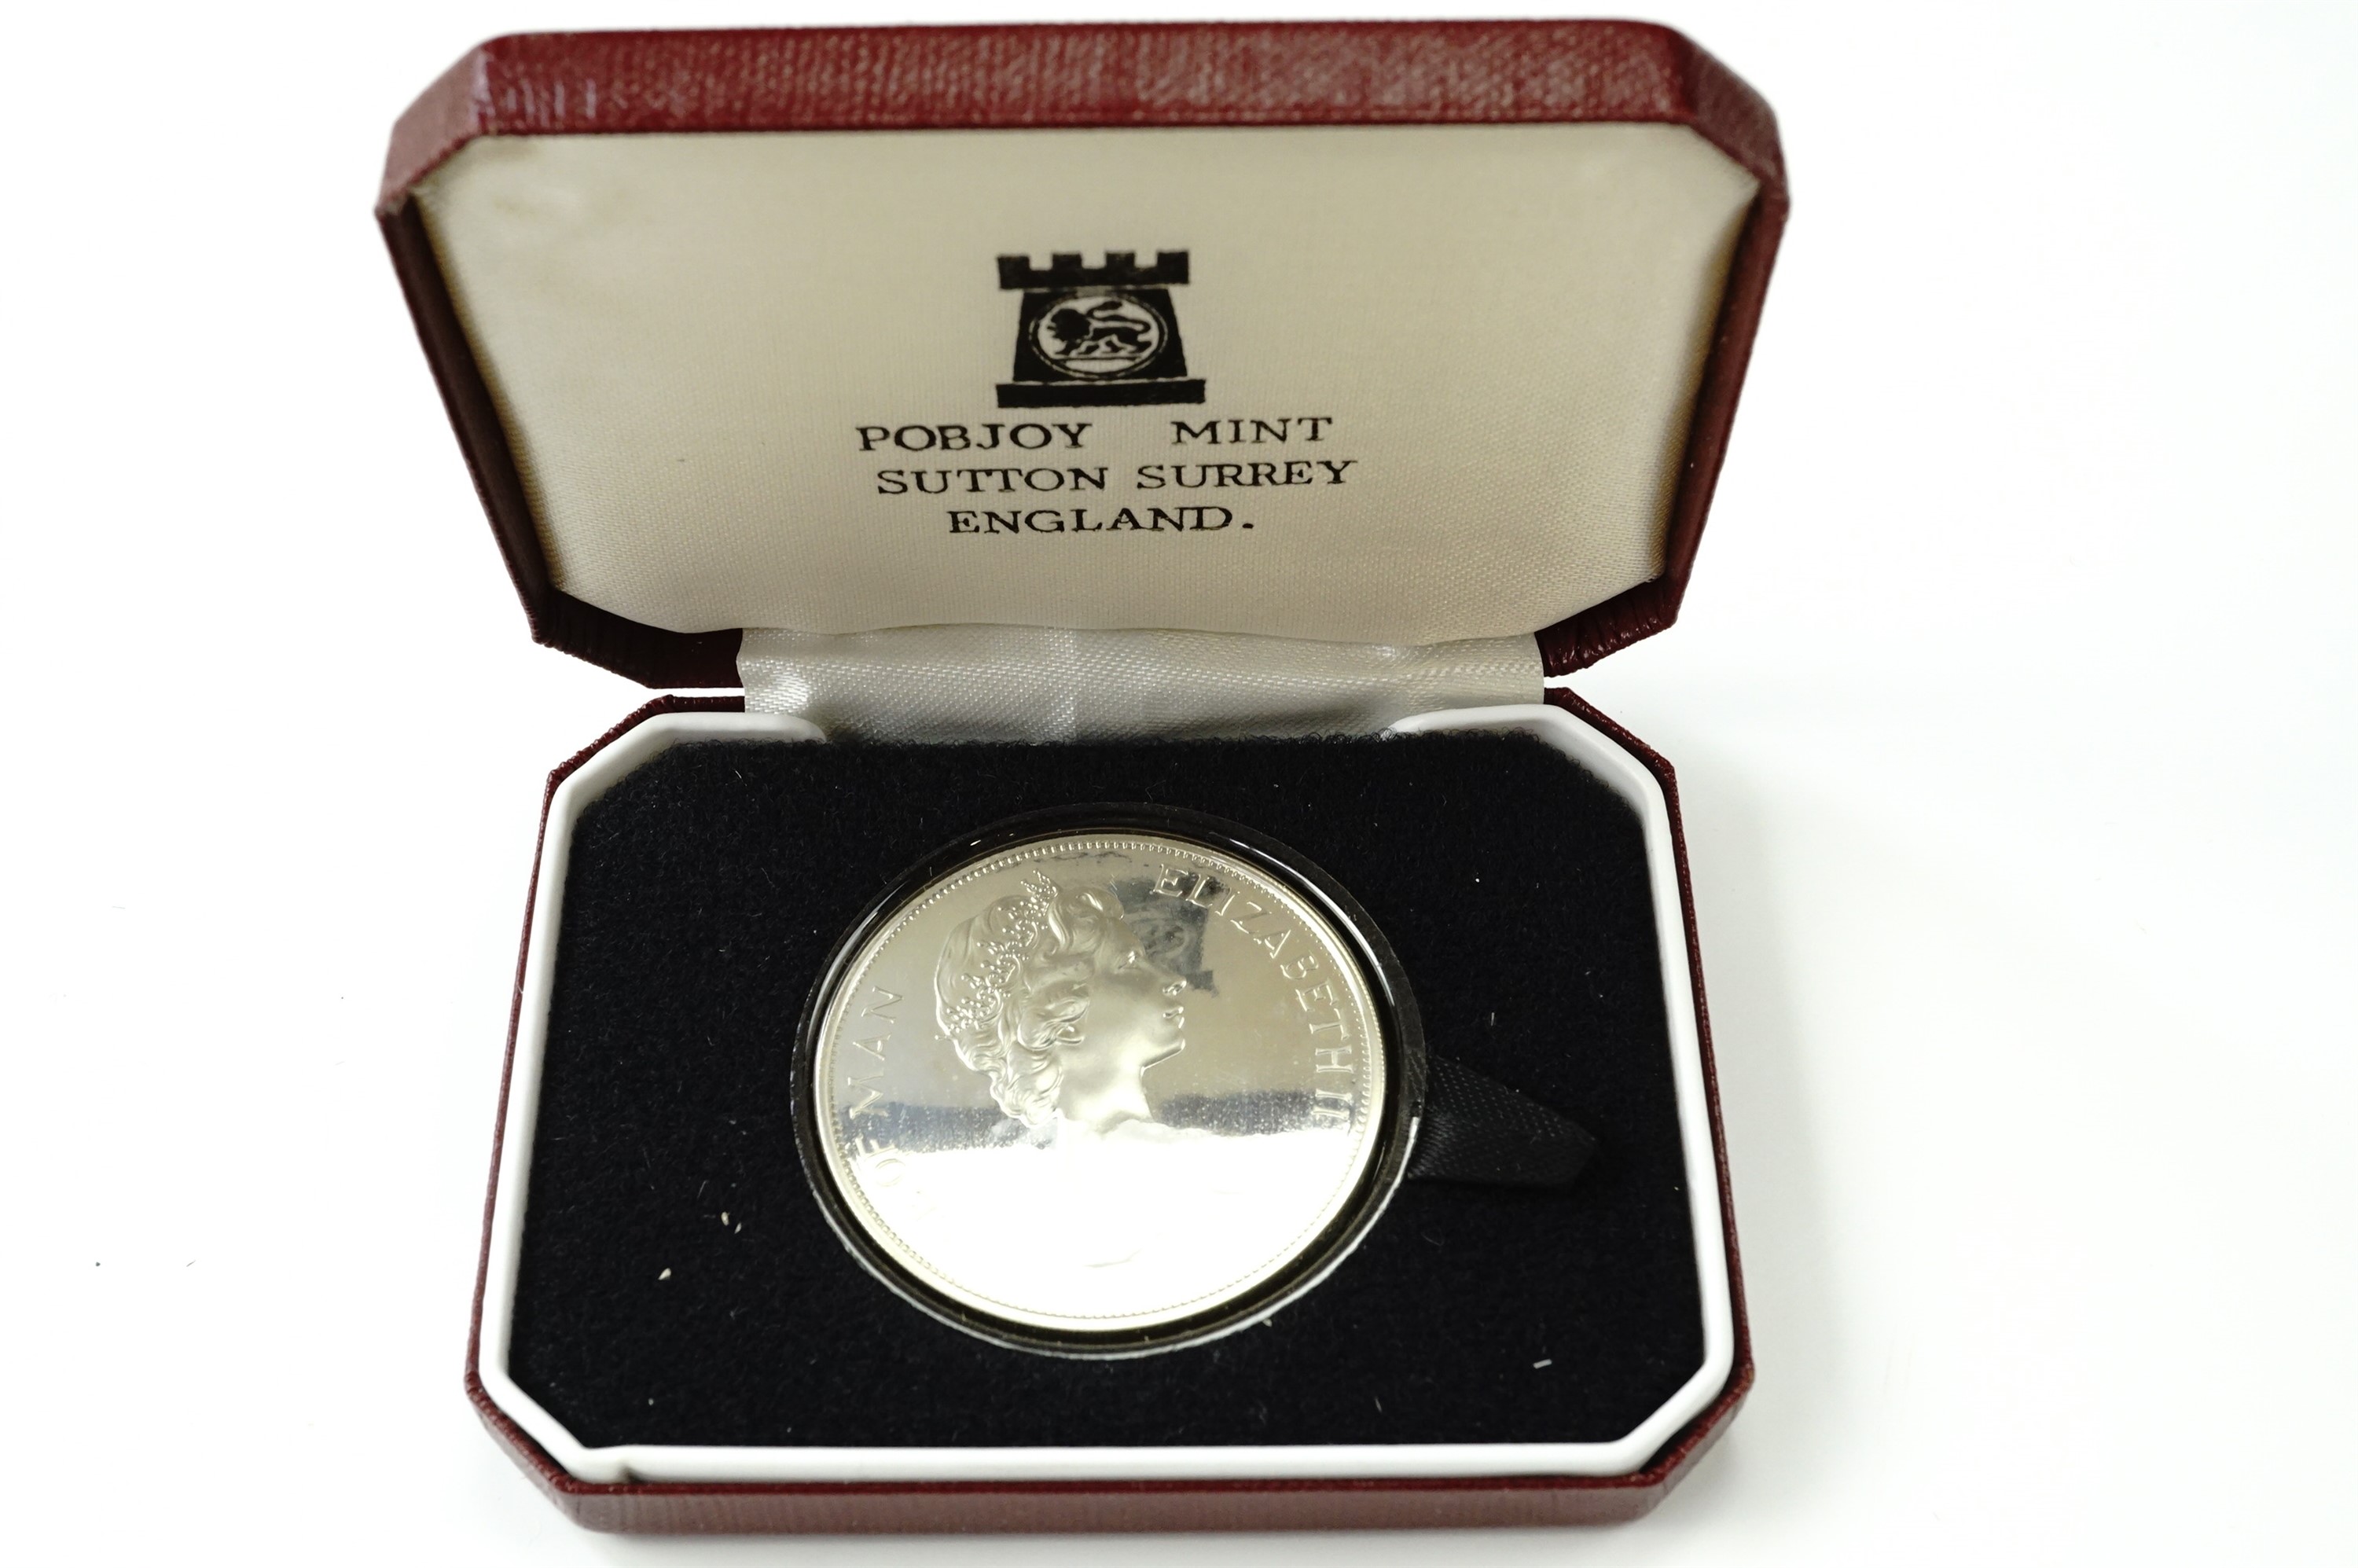 A cased 1976 silver Washington crown coin